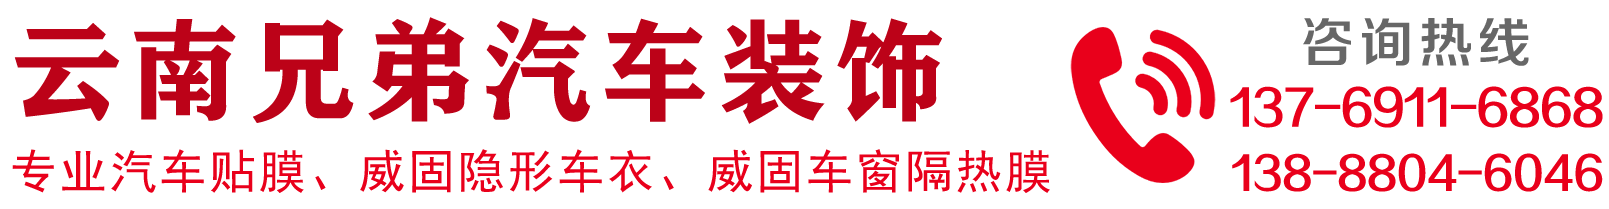 昆明金緣汽車裝飾_Logo